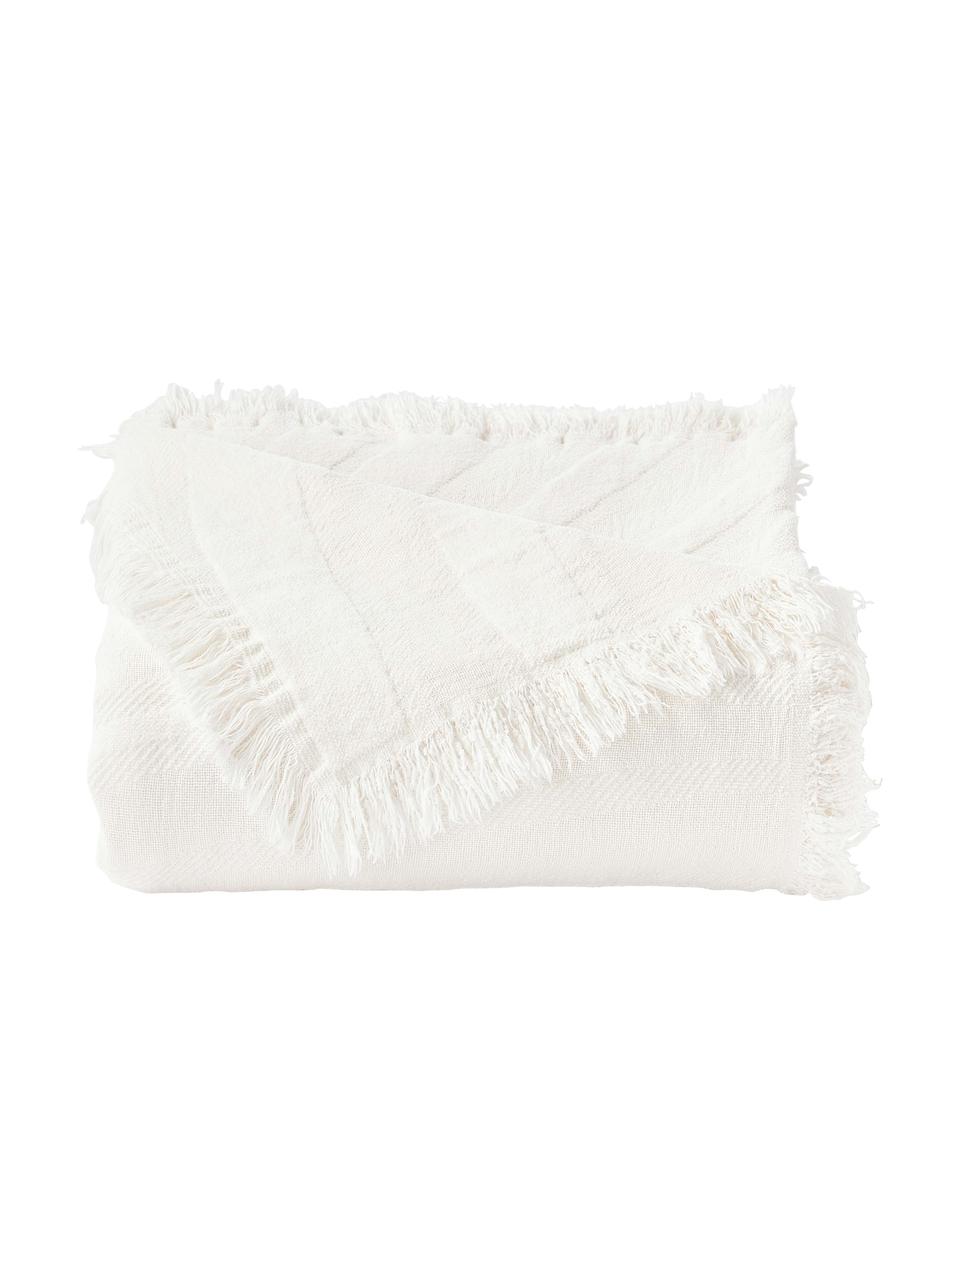 Coperta in cotone strutturato con frange Wavery, 100% cotone, Bianco crema, Larg. 130 x Lung. 170 cm